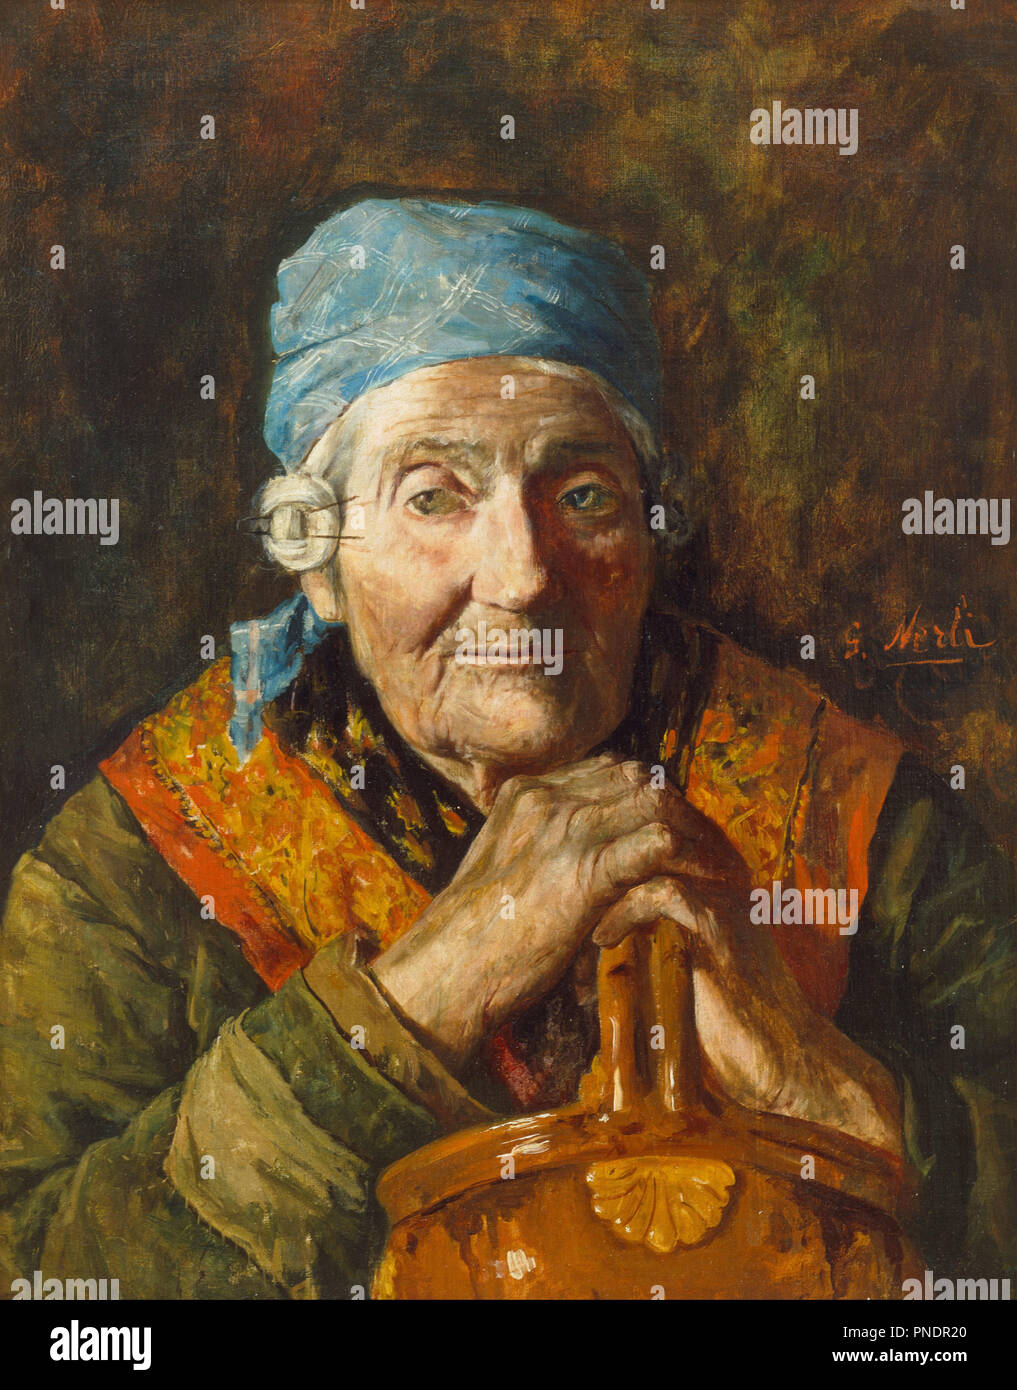 Una vecchia donna (studio). Data/Periodo: Inizio 1880. La pittura. Olio su tela. Altezza: 492 mm (19.37 in); larghezza: 394 mm (15.51 in). Autore: GIROLAMO NERLI. Foto Stock